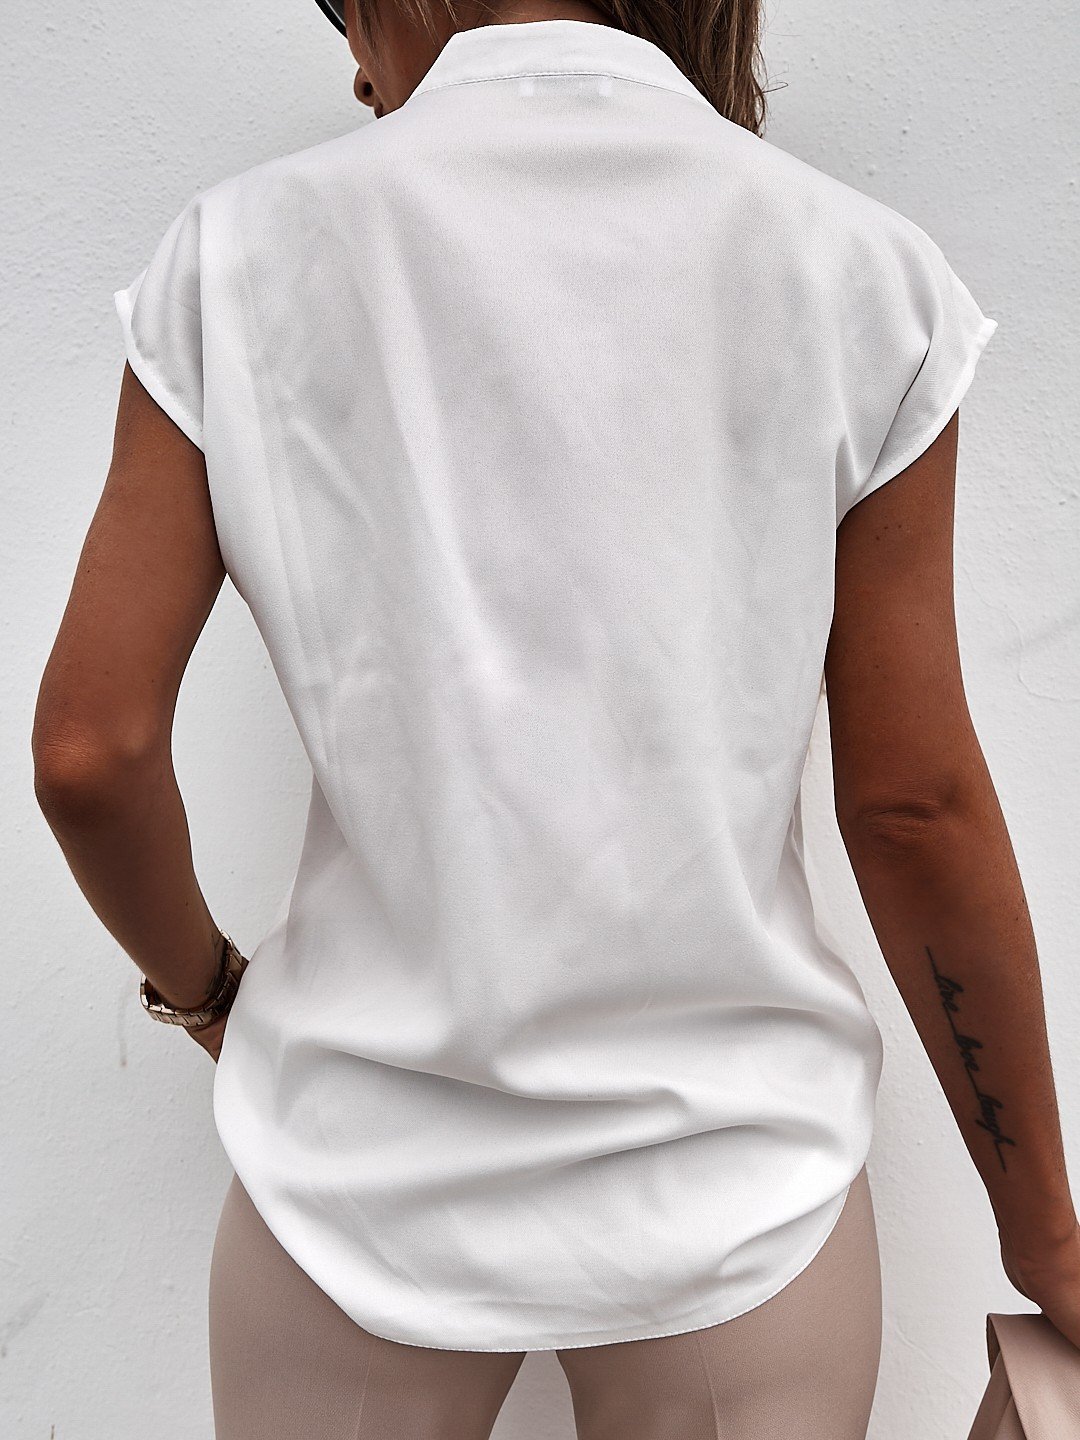 Solid Color V-Neck Short-Sleeved T-Shirt NSMUZ59395